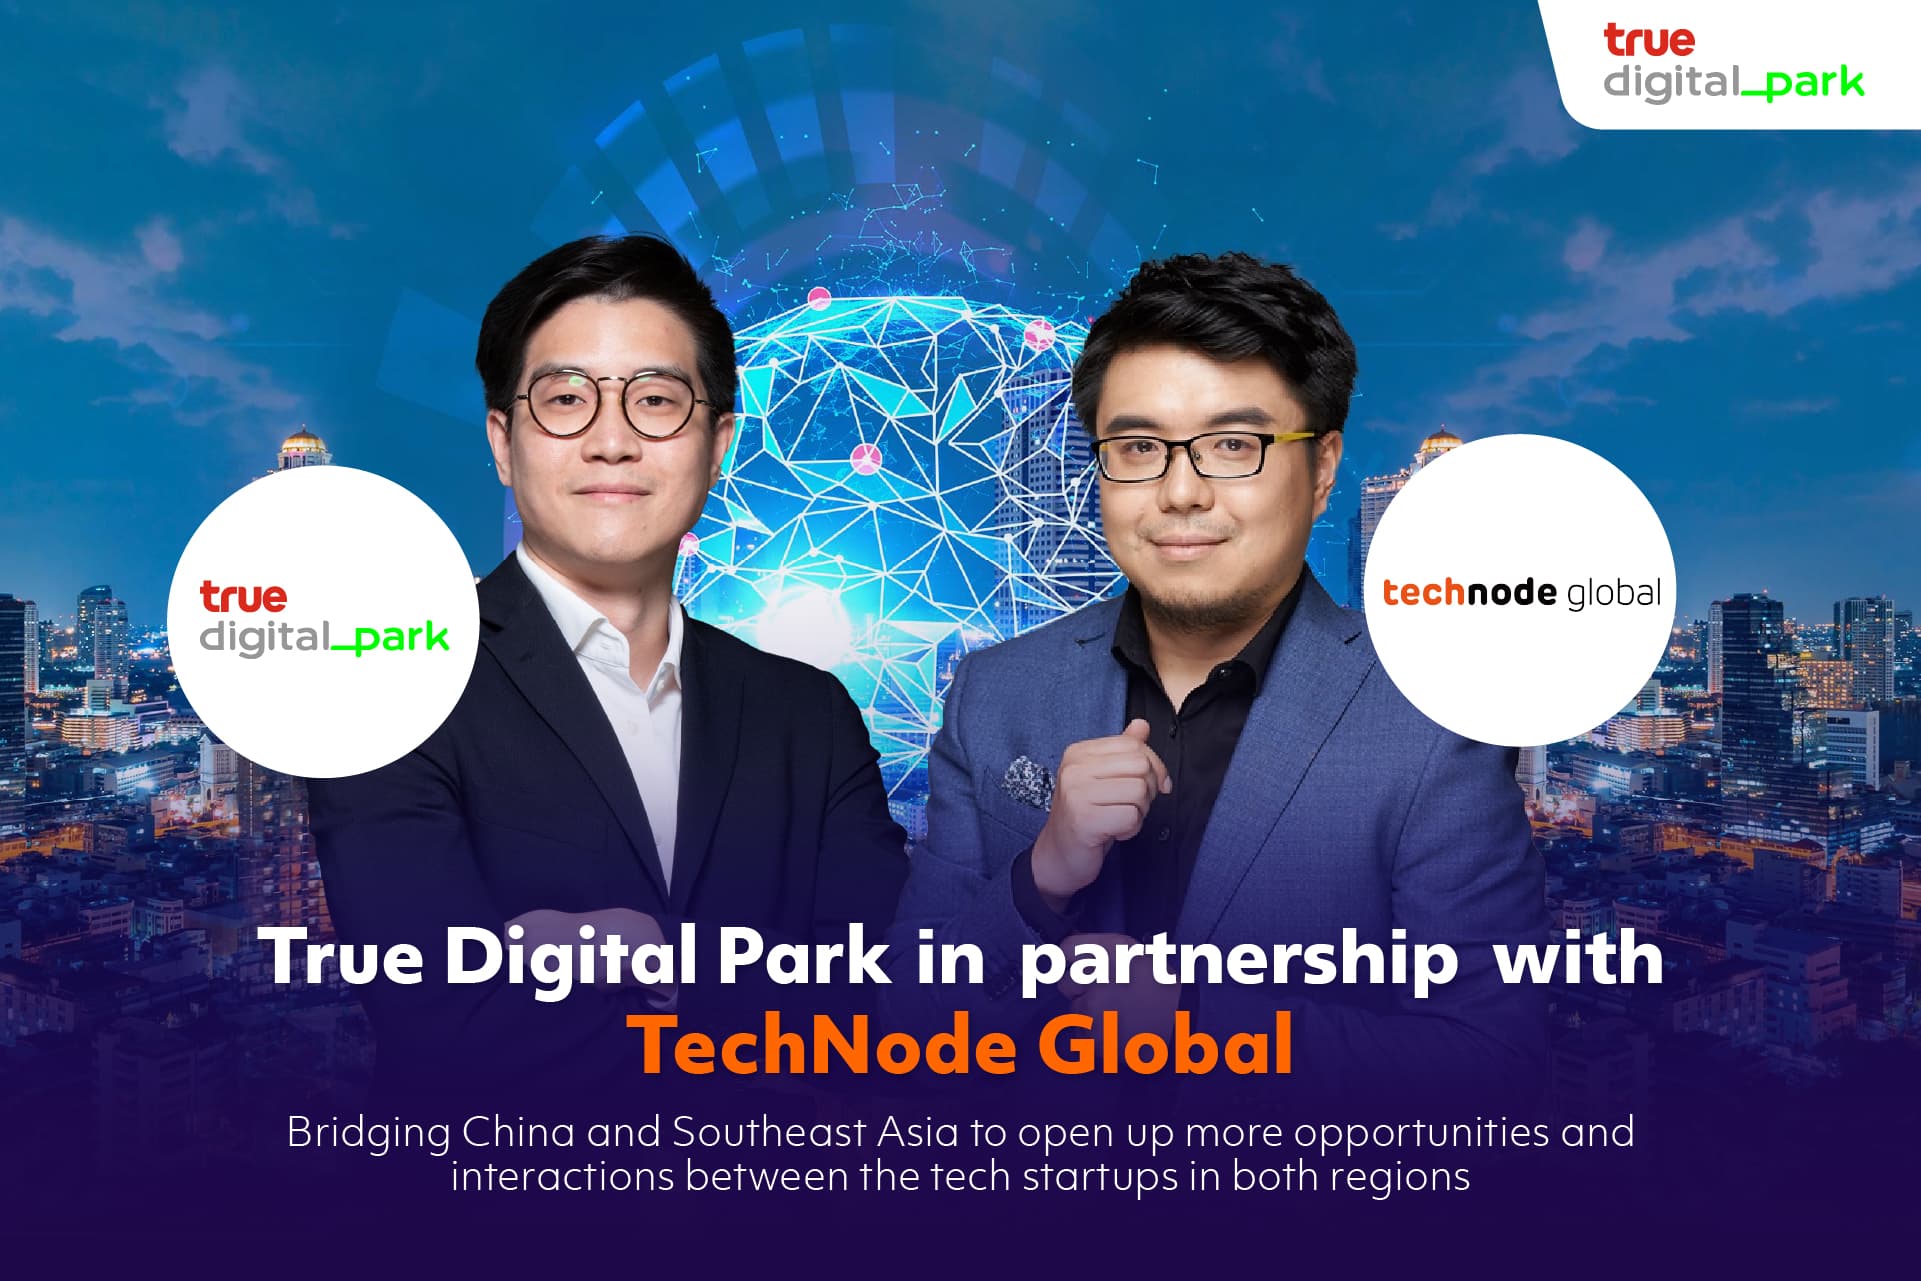 True Digital Park ประสานความร่วมมือ TechNode Global ร่วมสร้างโอกาสสำหรับสตาร์ทอัพไทยและต่างประเทศ สู่การขยายธุรกิจในภูมิภาค